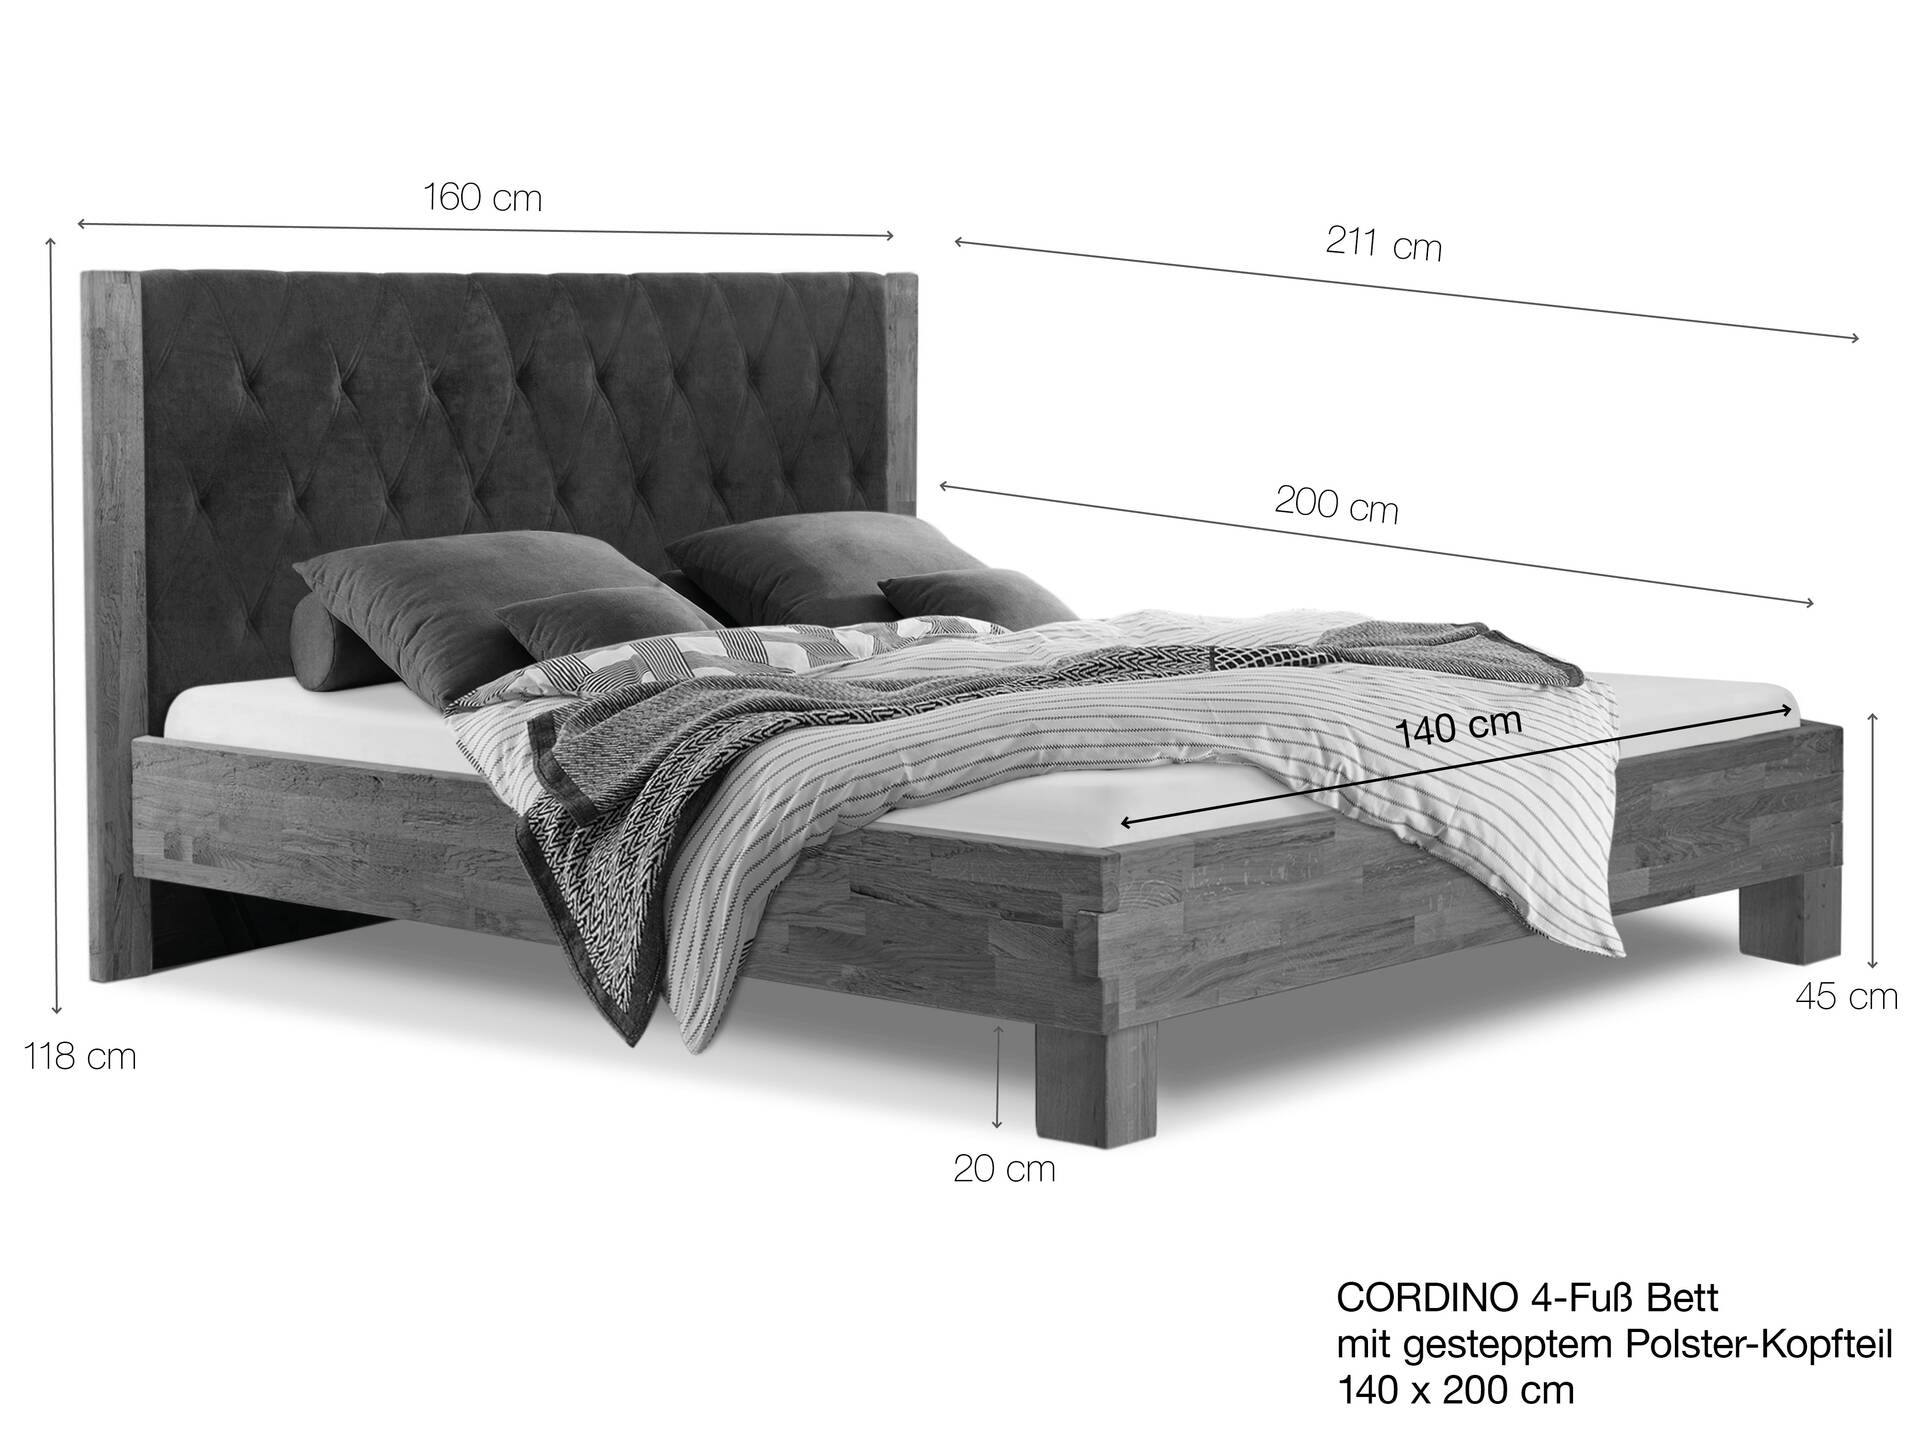 CORDINO 4-Fuß-Bett aus Eiche mit gestepptem Polster-Kopfteil, Material Massivholz 140 x 200 cm | Eiche unbehandelt | Stoff Anthrazit | gebürstet